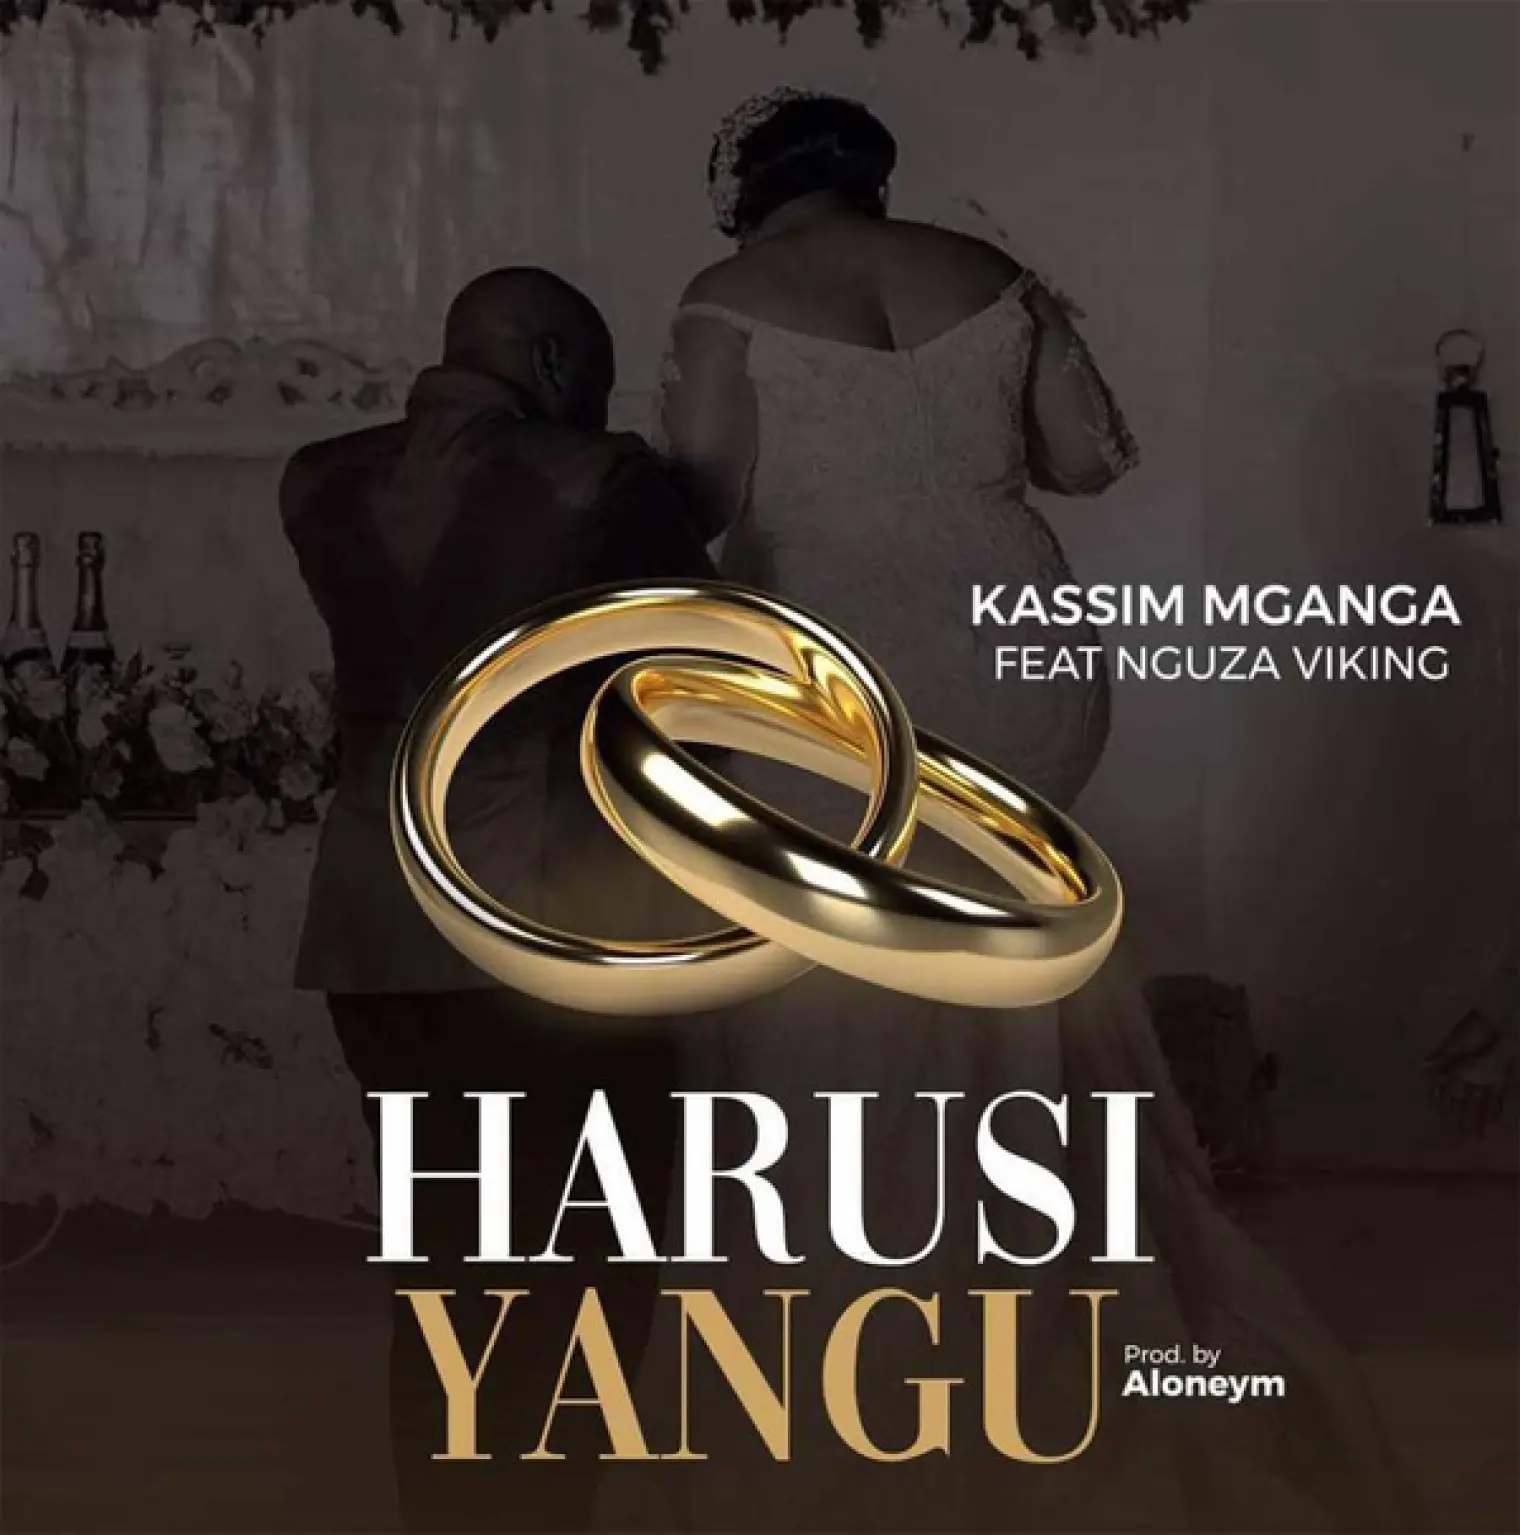 Harusi Yangu -  Kassim Mganga  